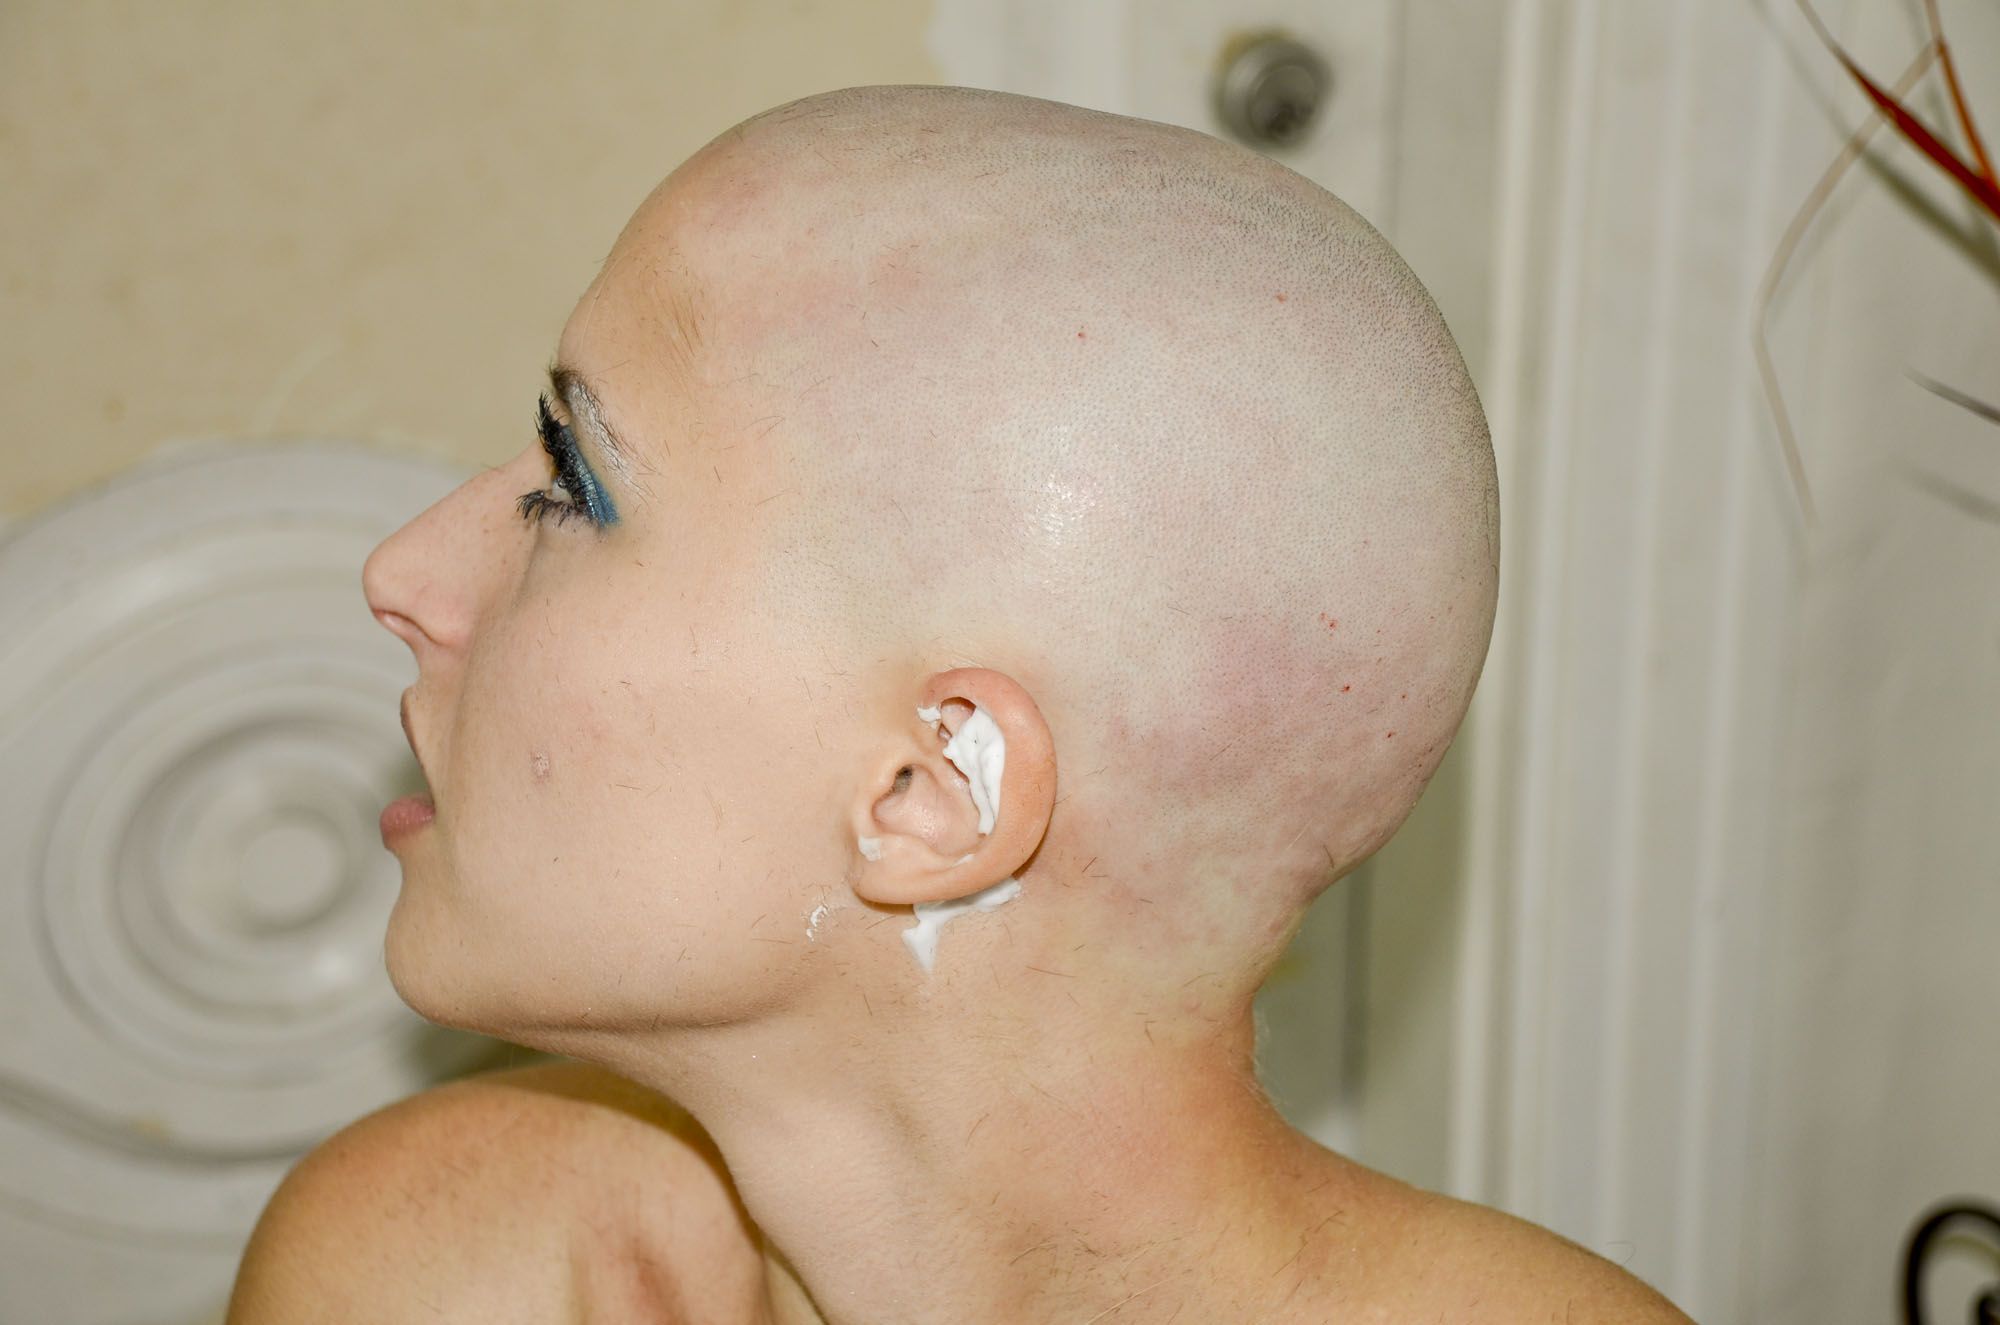 best of Fuck girl bald head